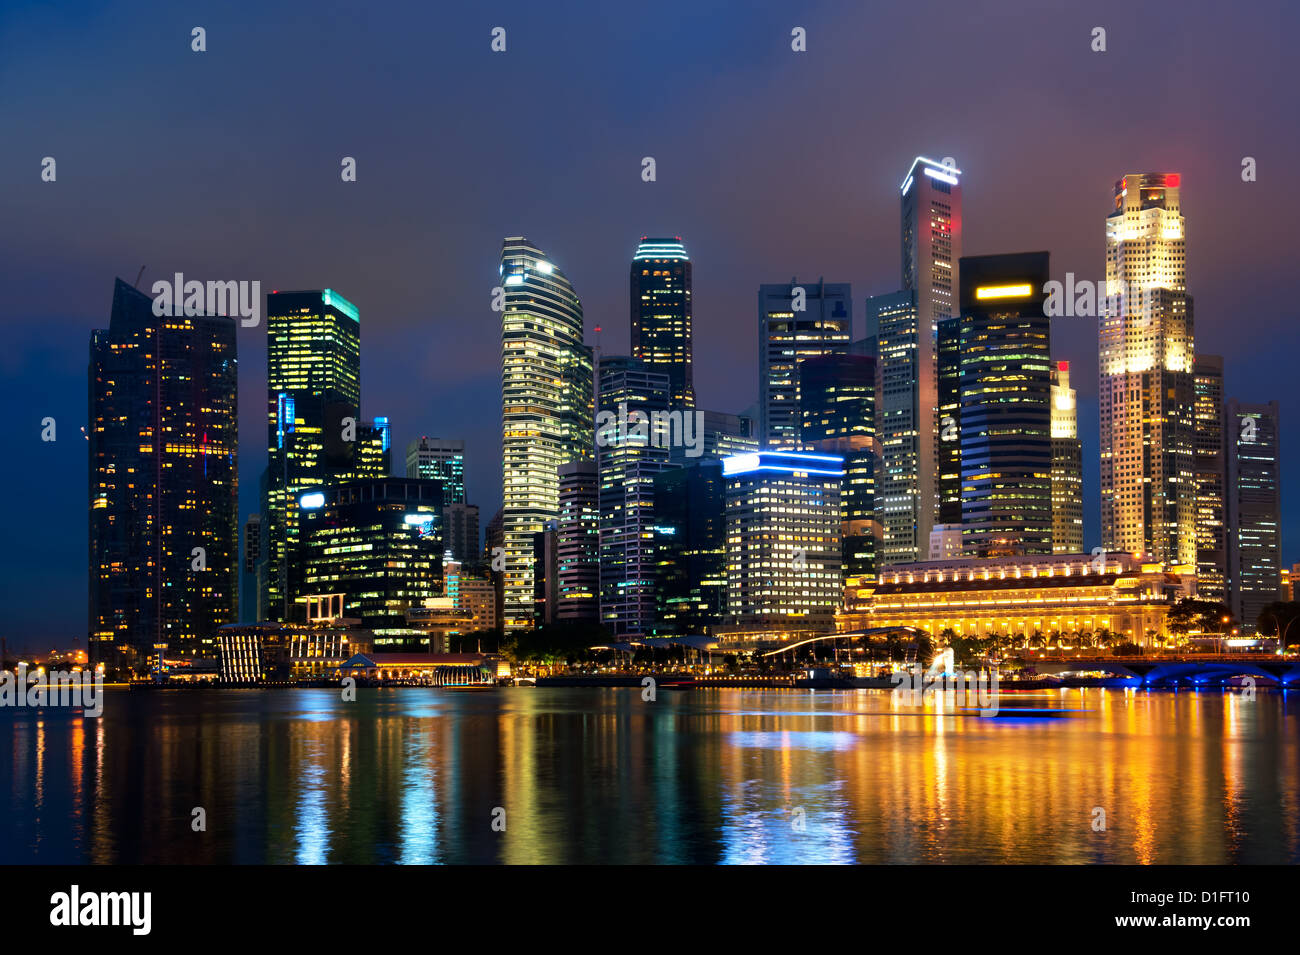 Singapore skyline at night. Stock Photo